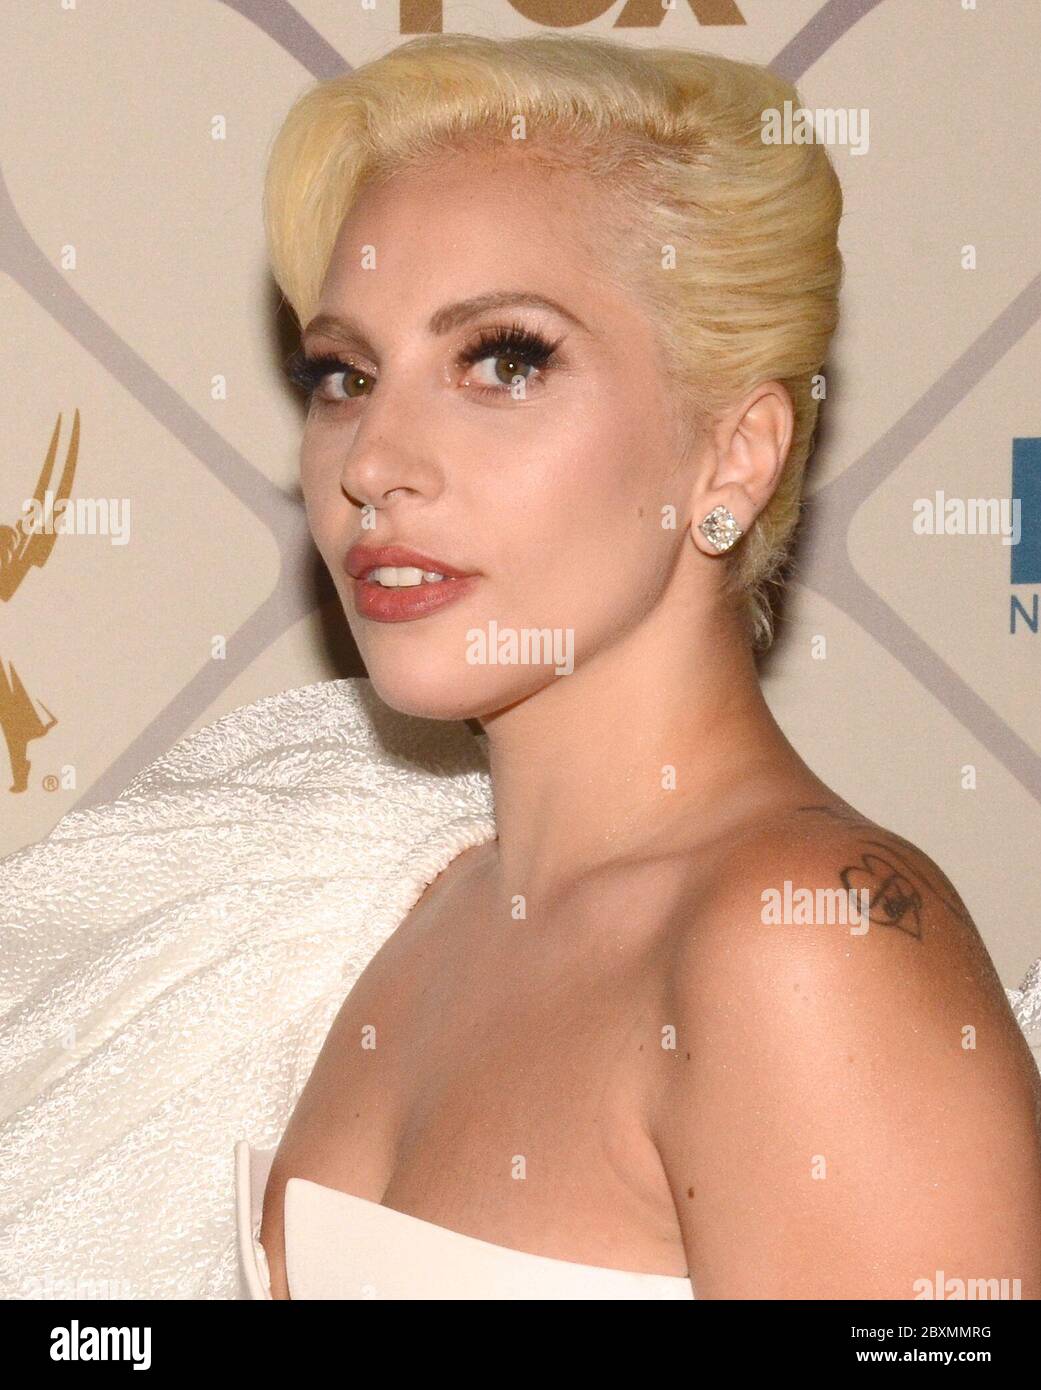 Septiembre 20, 2015, los Angeles, California, EE.UU.: Lady Gaga aka Stefani Joanne Angelina Germanotta asiste a la 67ª entrega de premios Emmy de Primetime Fox después de la fiesta el 20 de septiembre de 2015 en los Angeles, California. (Imagen de crédito: © Billy Bennight/ZUMA Wire) Foto de stock